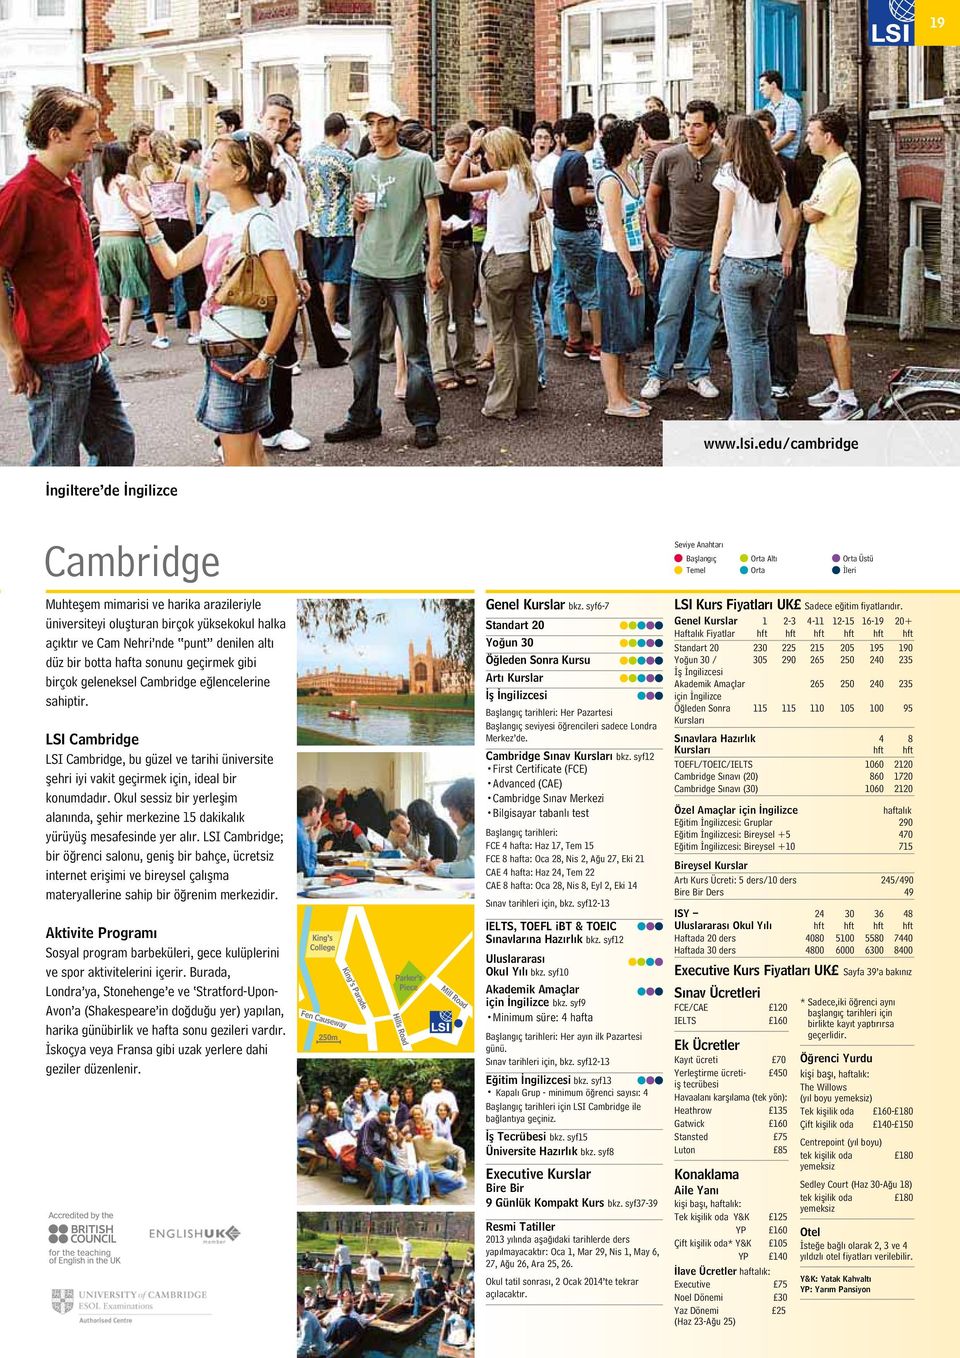 LSI Cambridge, bu güzel ve tarihi üniversite şehri iyi vakit geçirmek için, ideal bir konumdadır. Okul sessiz bir yerleşim alanında, şehir merkezine 15 dakikalık yürüyüş mesafesinde yer alır.